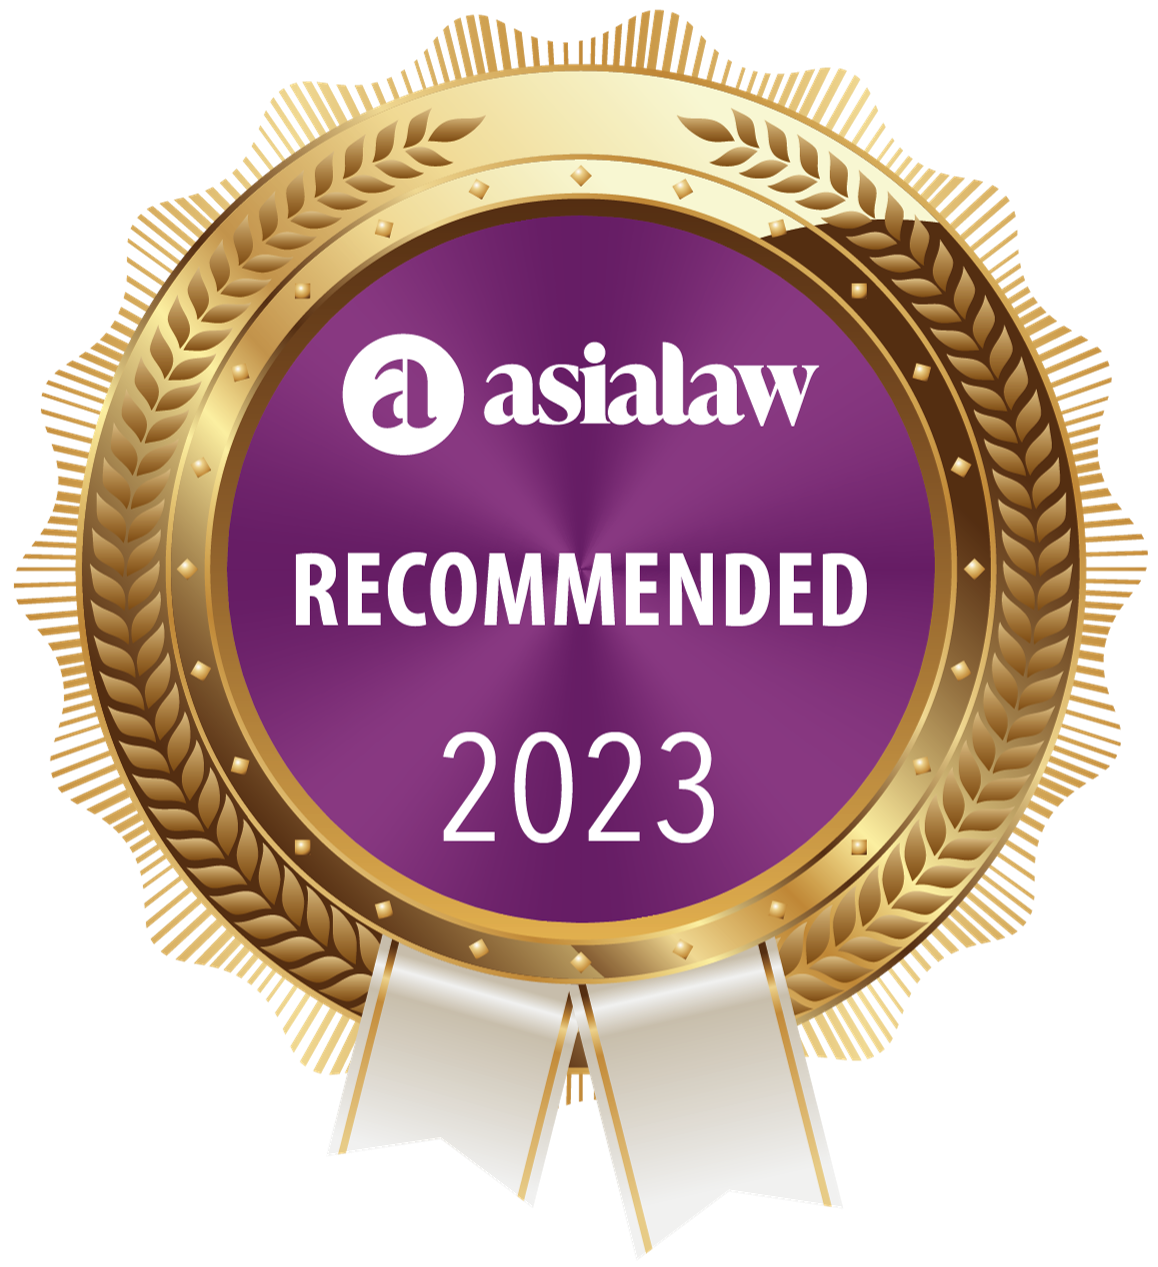 《亚洲法律》(Asialaw) 亚太区香港法域2022/23年度：资本市场 “推荐” 律师事务所；企业与并购，争议解决，监管 “备受注目” 律师事务所